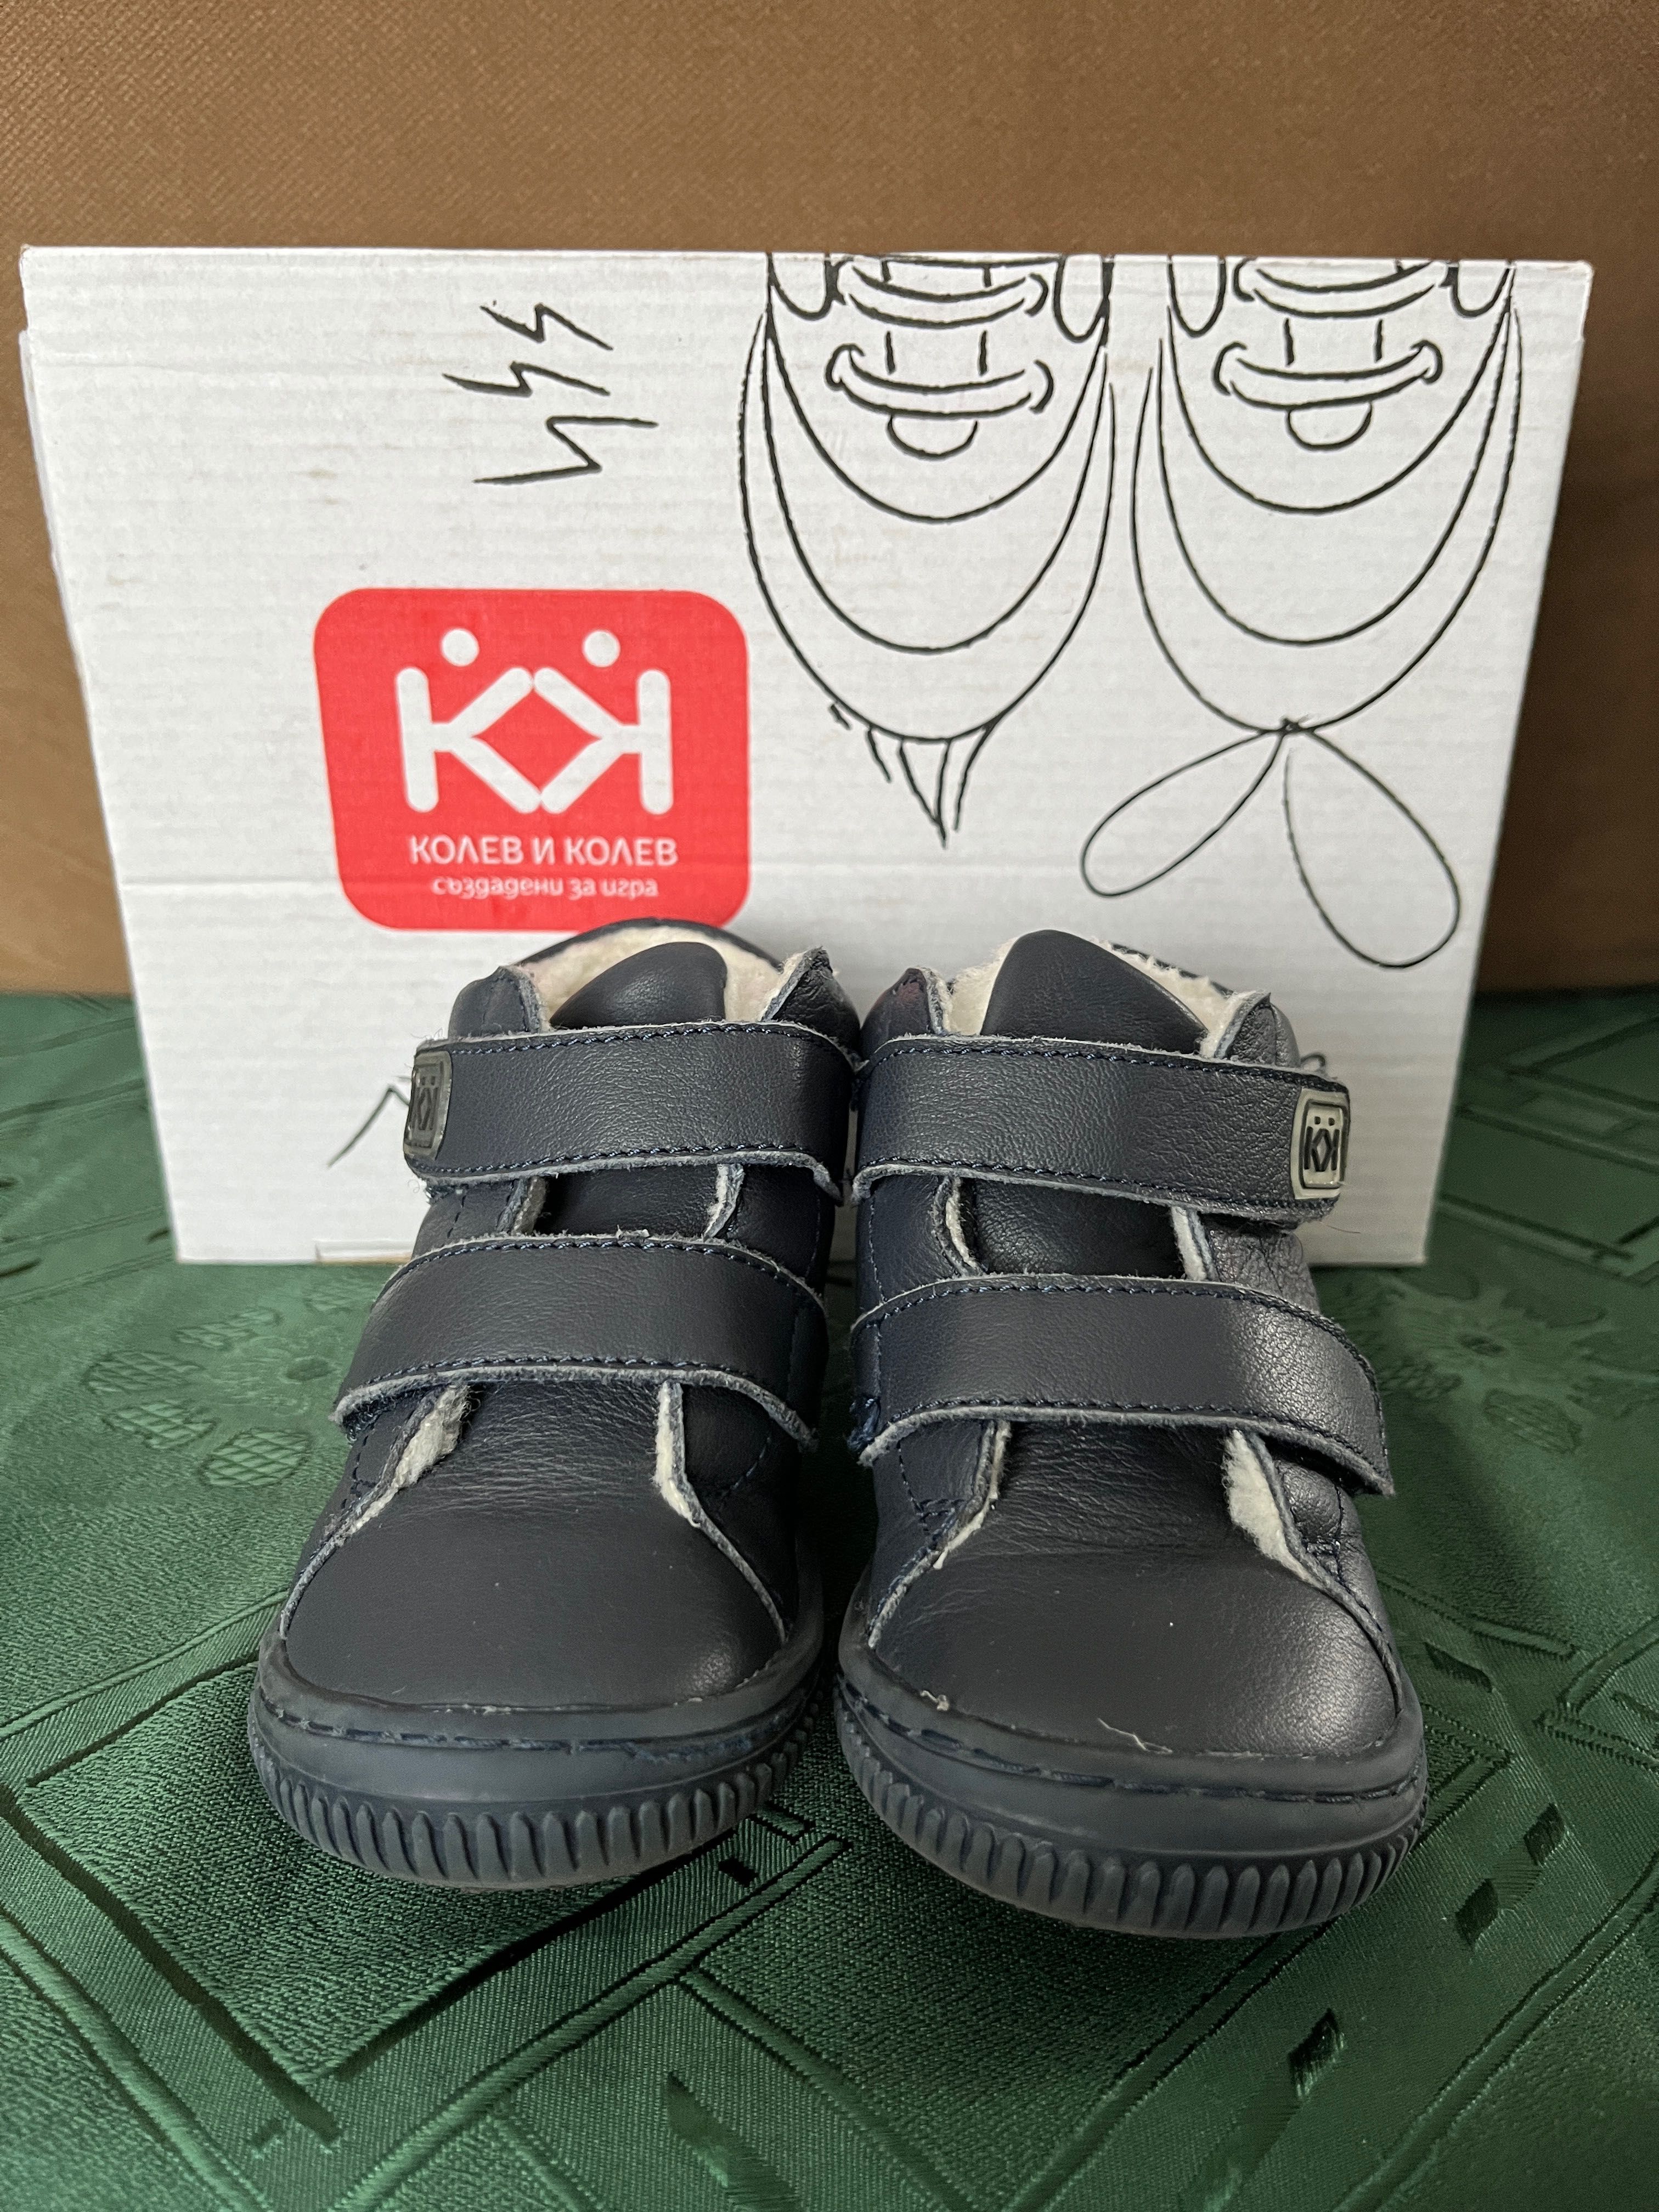 Зимни бебешки обувки Колев и Колев - размер 21 - тъмносини